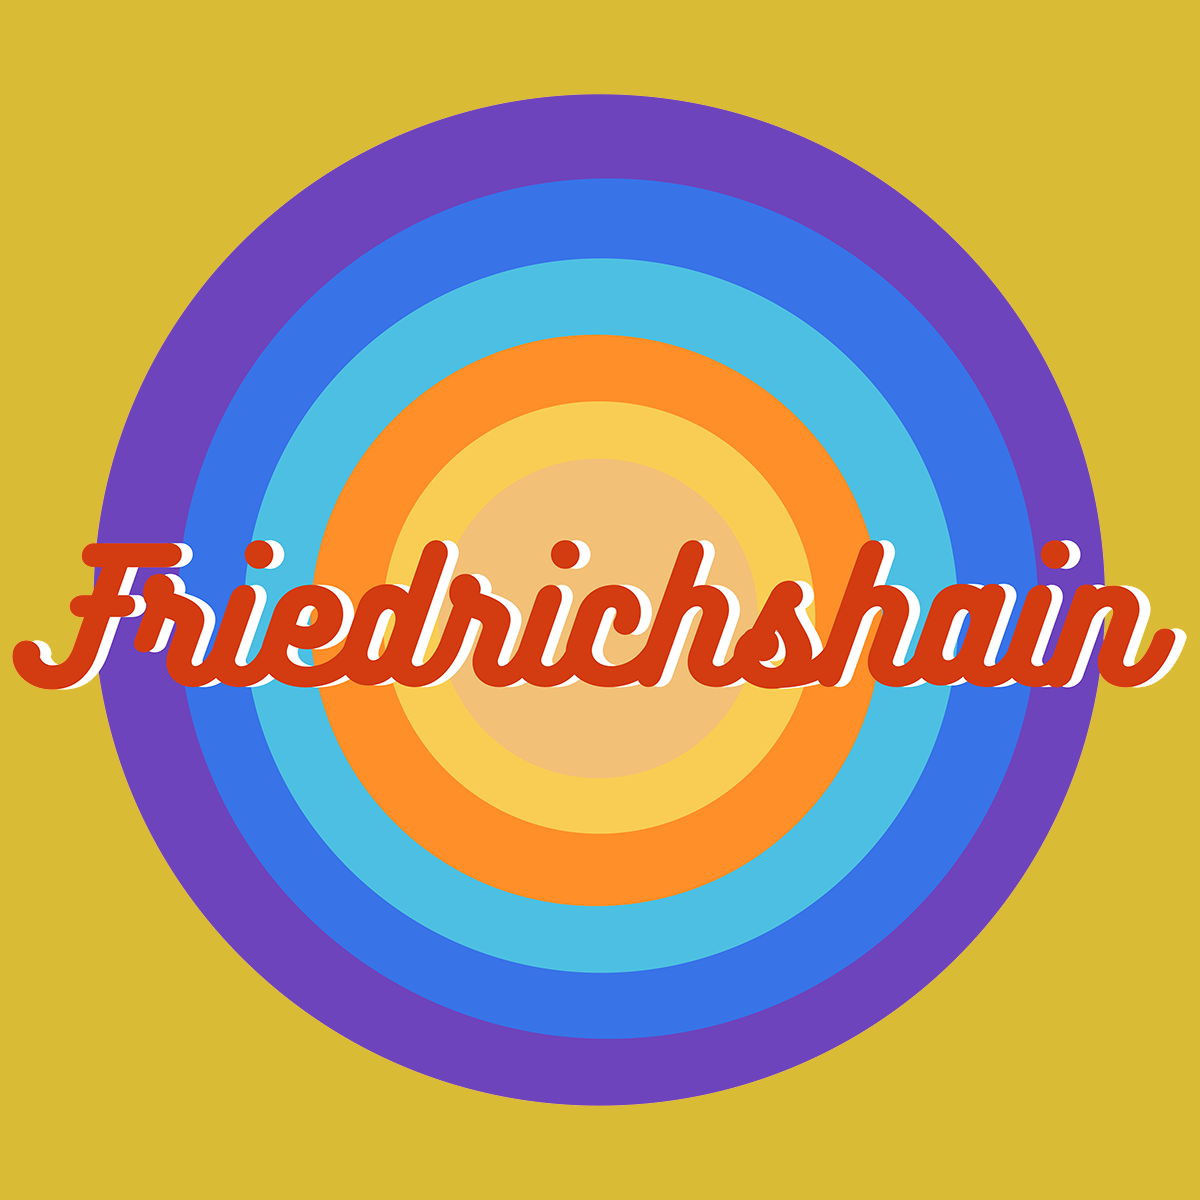 Friedrichshain Retro